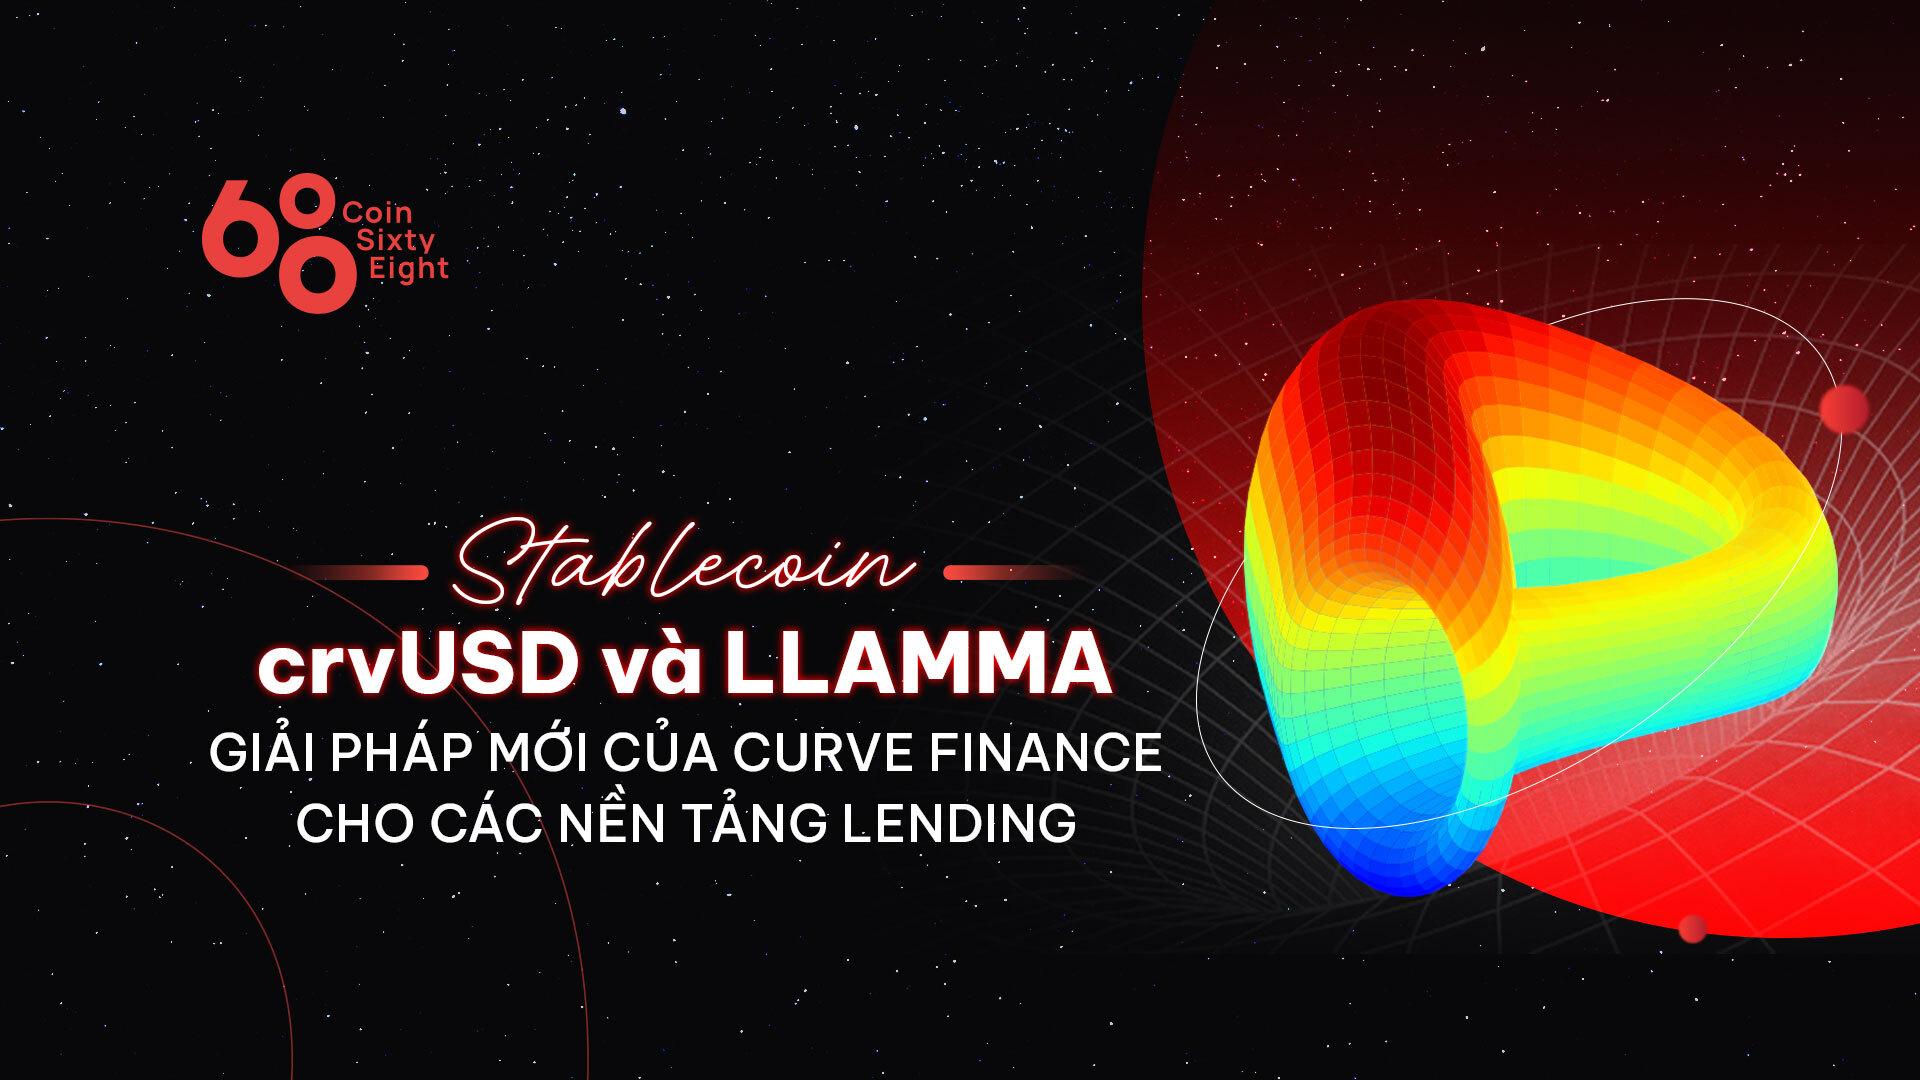 llamma-va-stablecoin-crvusd-giai-phap-moi-cua-curve-finance-cho-cac-nen-tang-lending